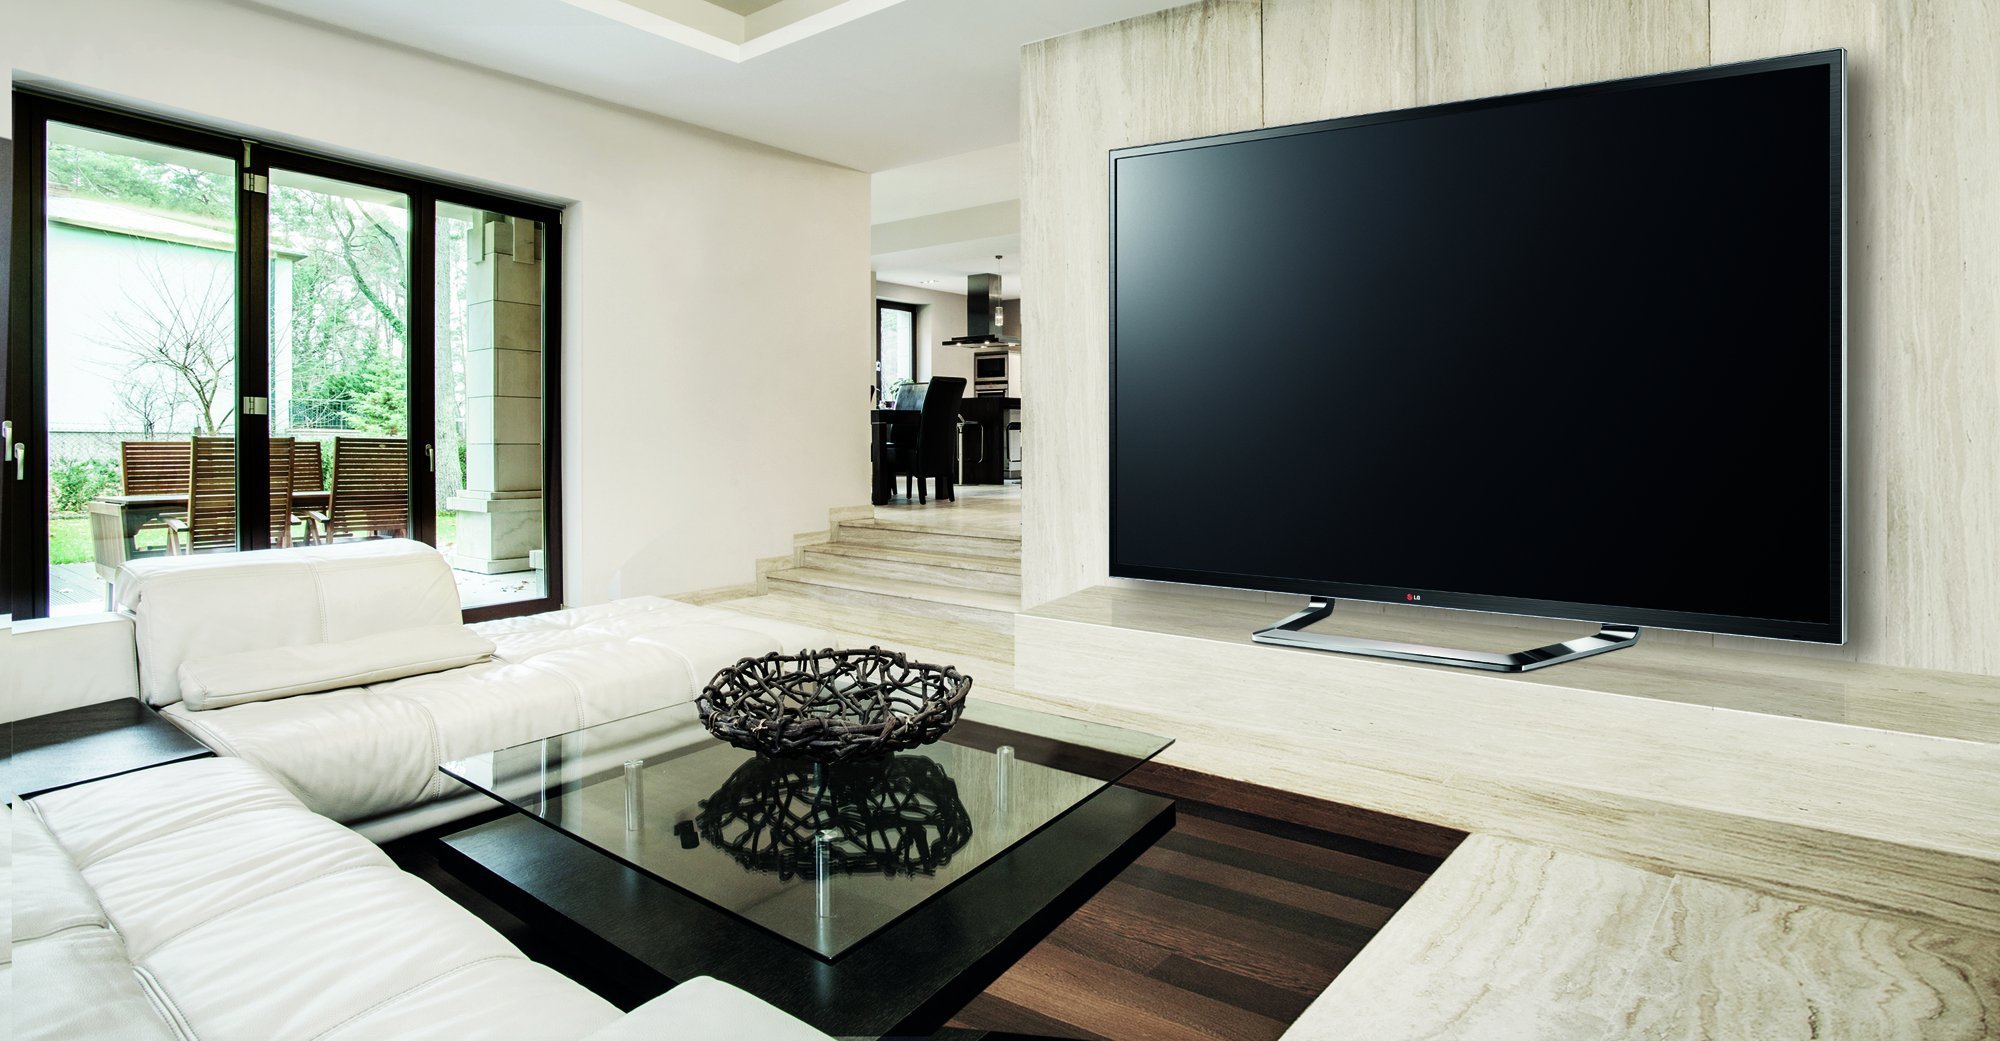 Видимо телевизор. Телевизор в интерьере. Гостиная с большим телевизором. Большой телевизор в интерьере. Большой телевизор на стену в гостиной.